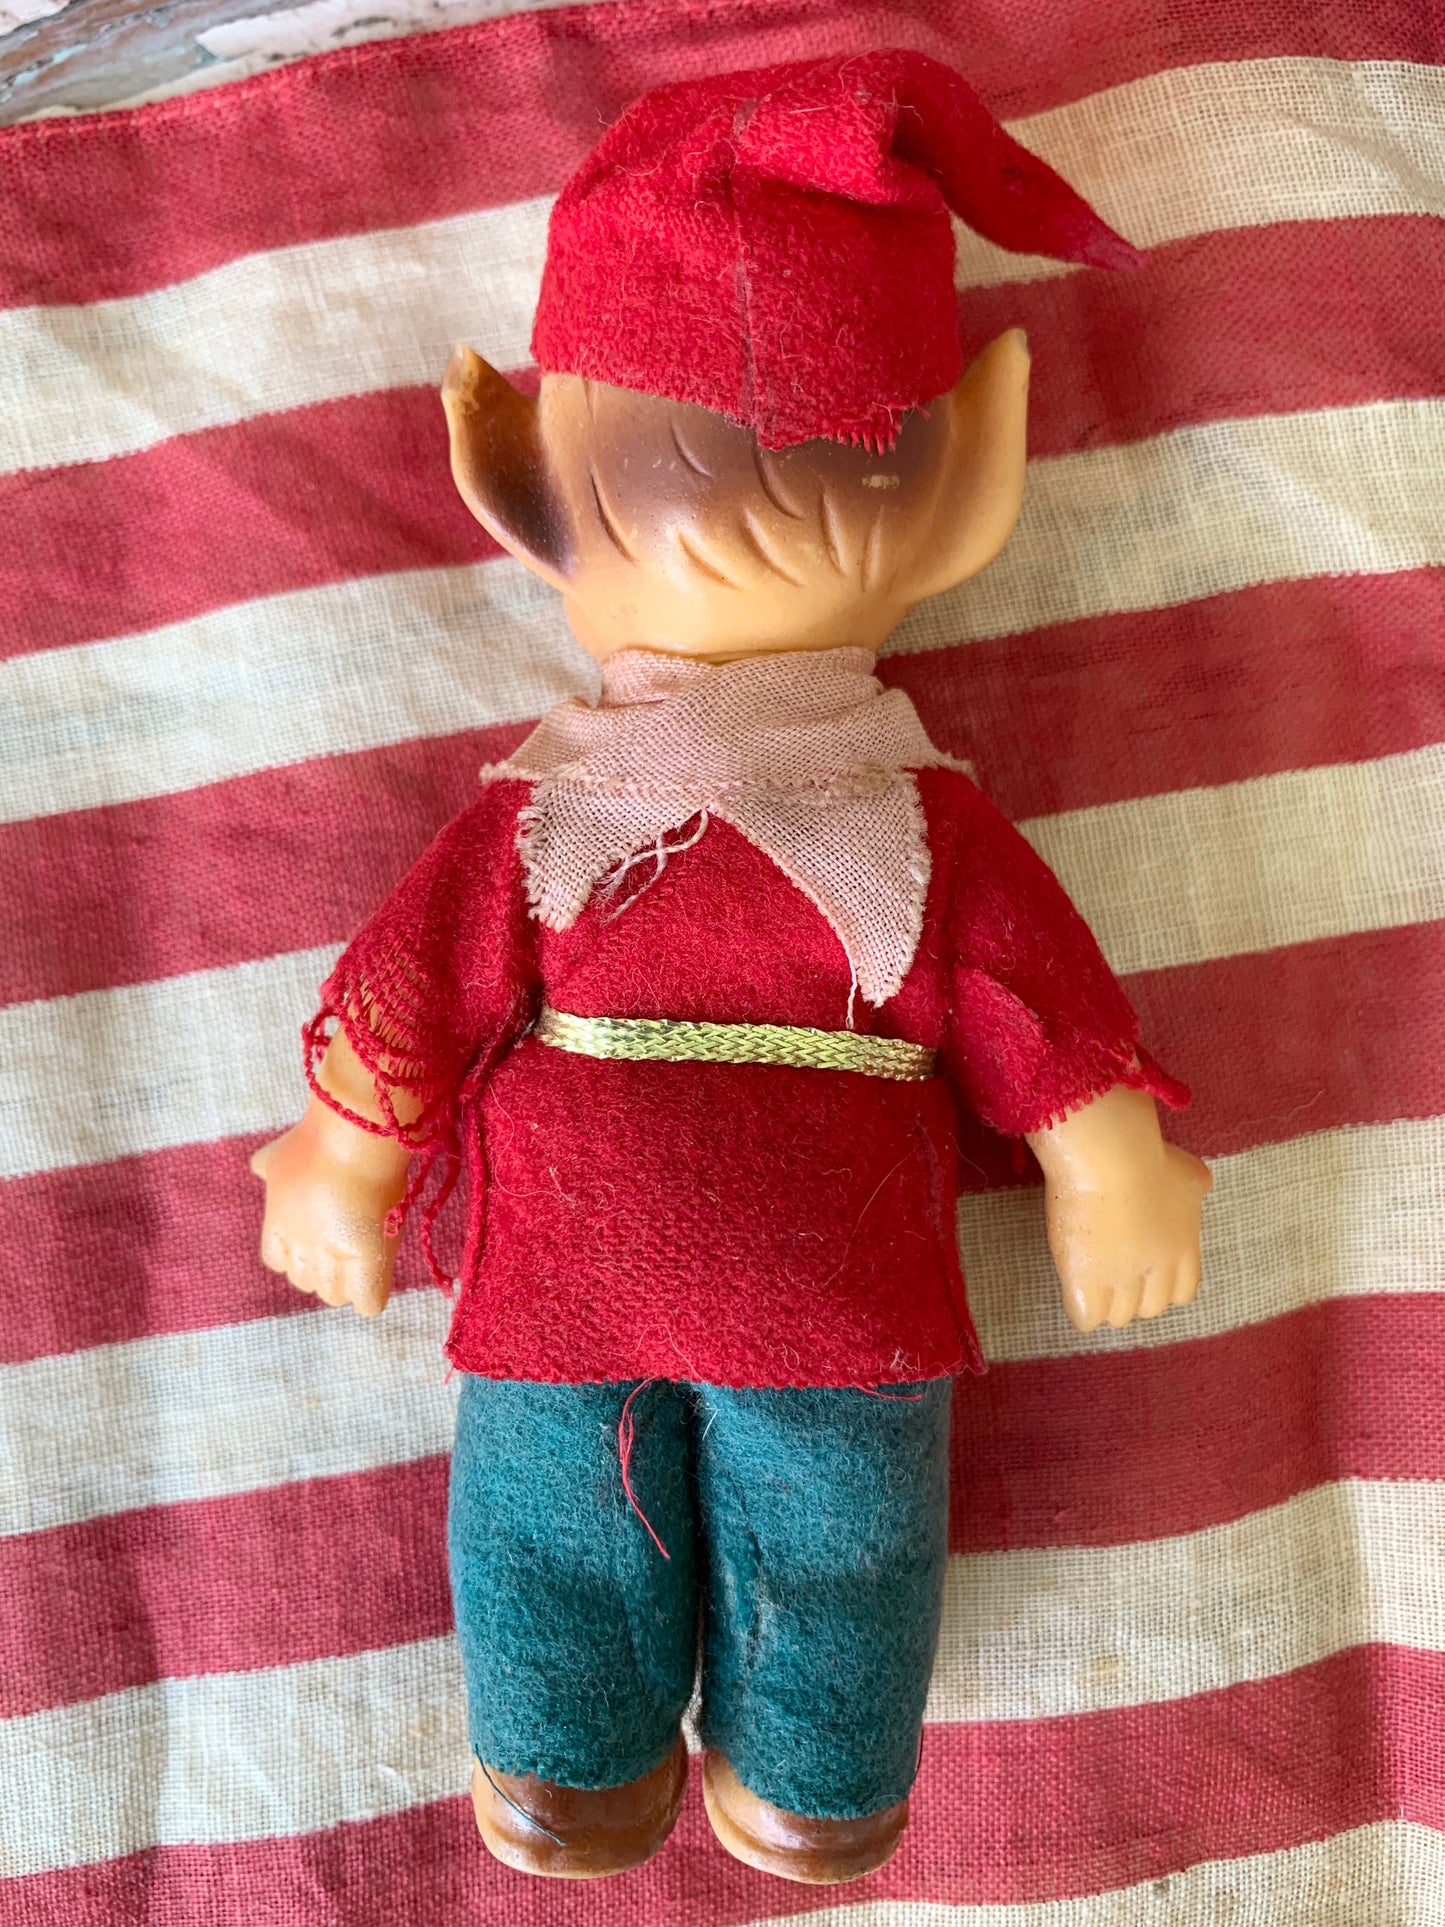 Vintage mini elf figurine Christmas decoration pixie doll